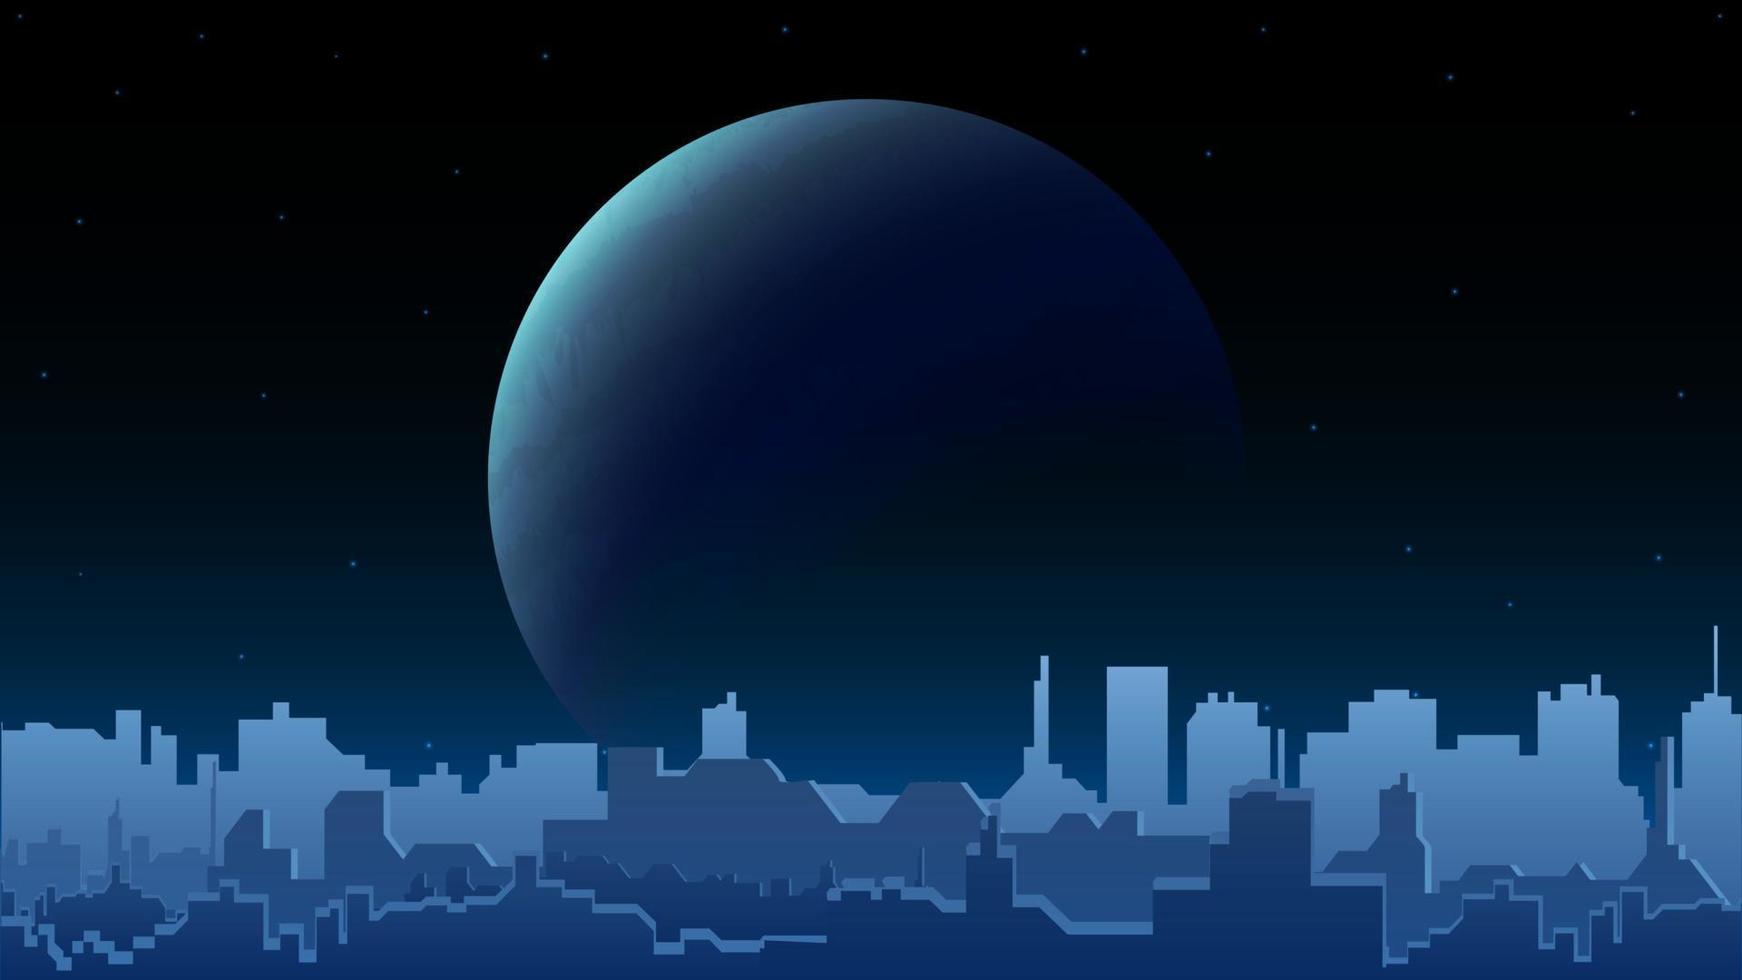 paisagem noturna da cidade com um grande planeta no horizonte e a silhueta de uma cidade moderna com prédios altos. paisagem da cidade à noite azul vetor